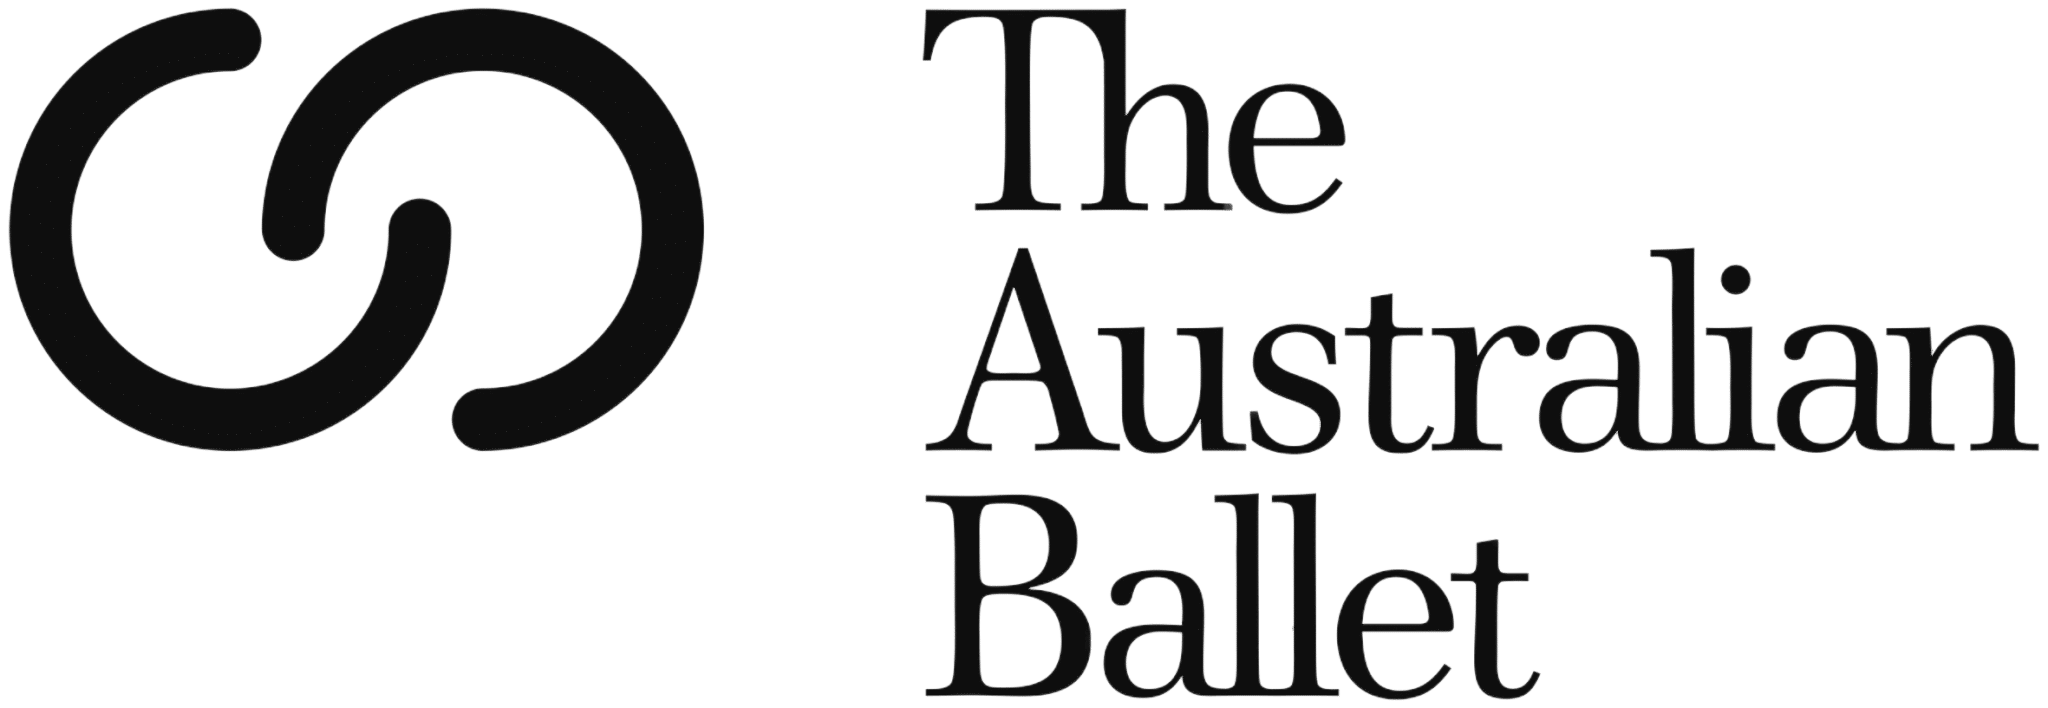 澳洲芭蕾舞團 (Australian Ballet)